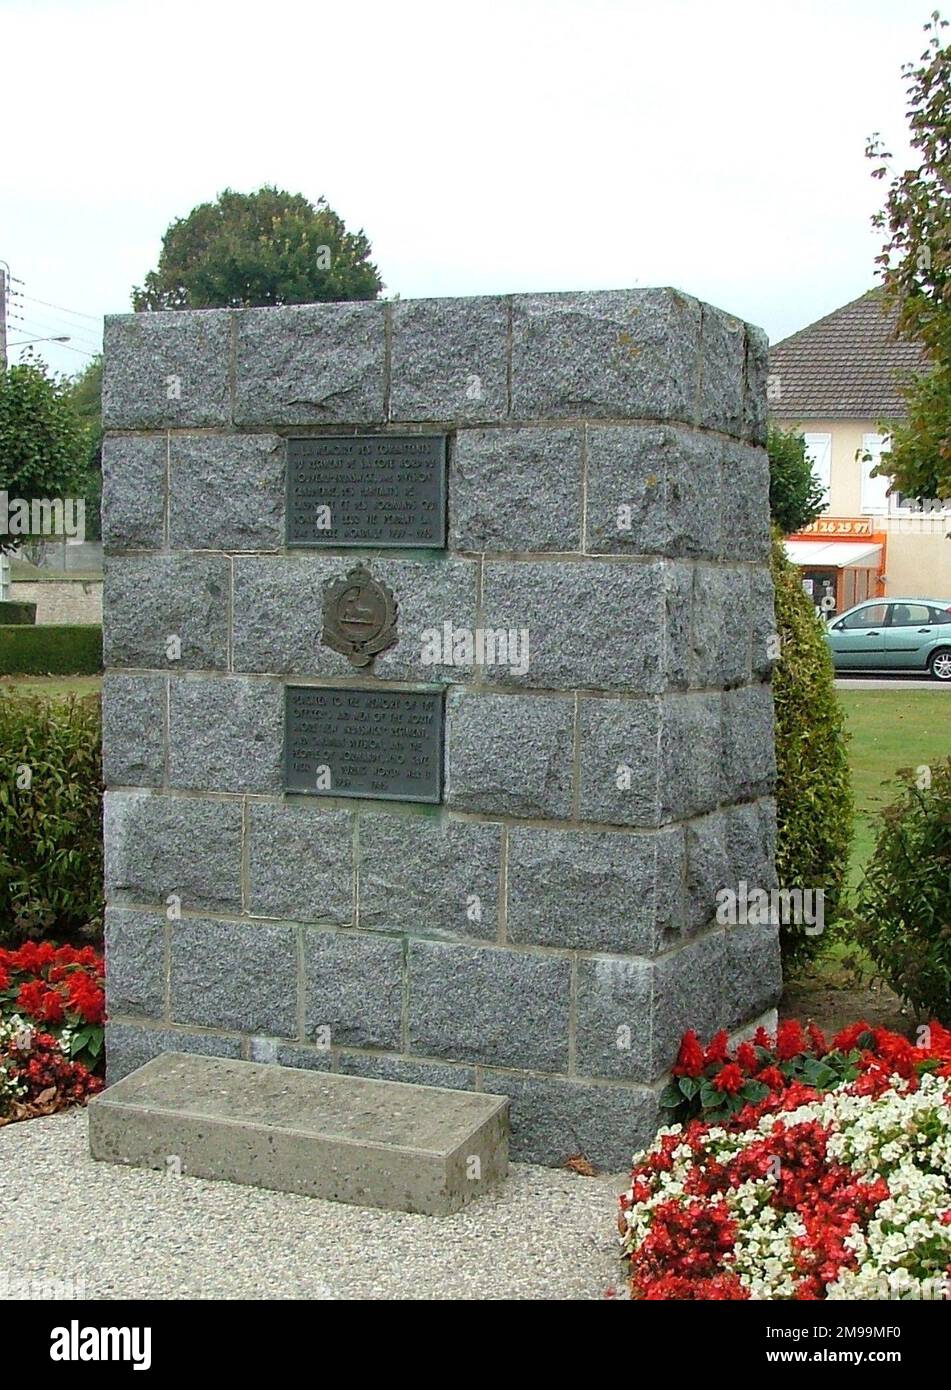 Dieses Memorial to the North Shore (New Brunswick) Regiment befindet sich auf der D14 in Richtung Carpiquet Airport. Daneben ist auf einem NTL (Normandie Terre-Liberte) Totem ein Bericht über den Kampf der Kanadier mit 12. SS (Hitler Youth). Die Kämpfe dauerten bis zum 8. Juli. Stockfoto